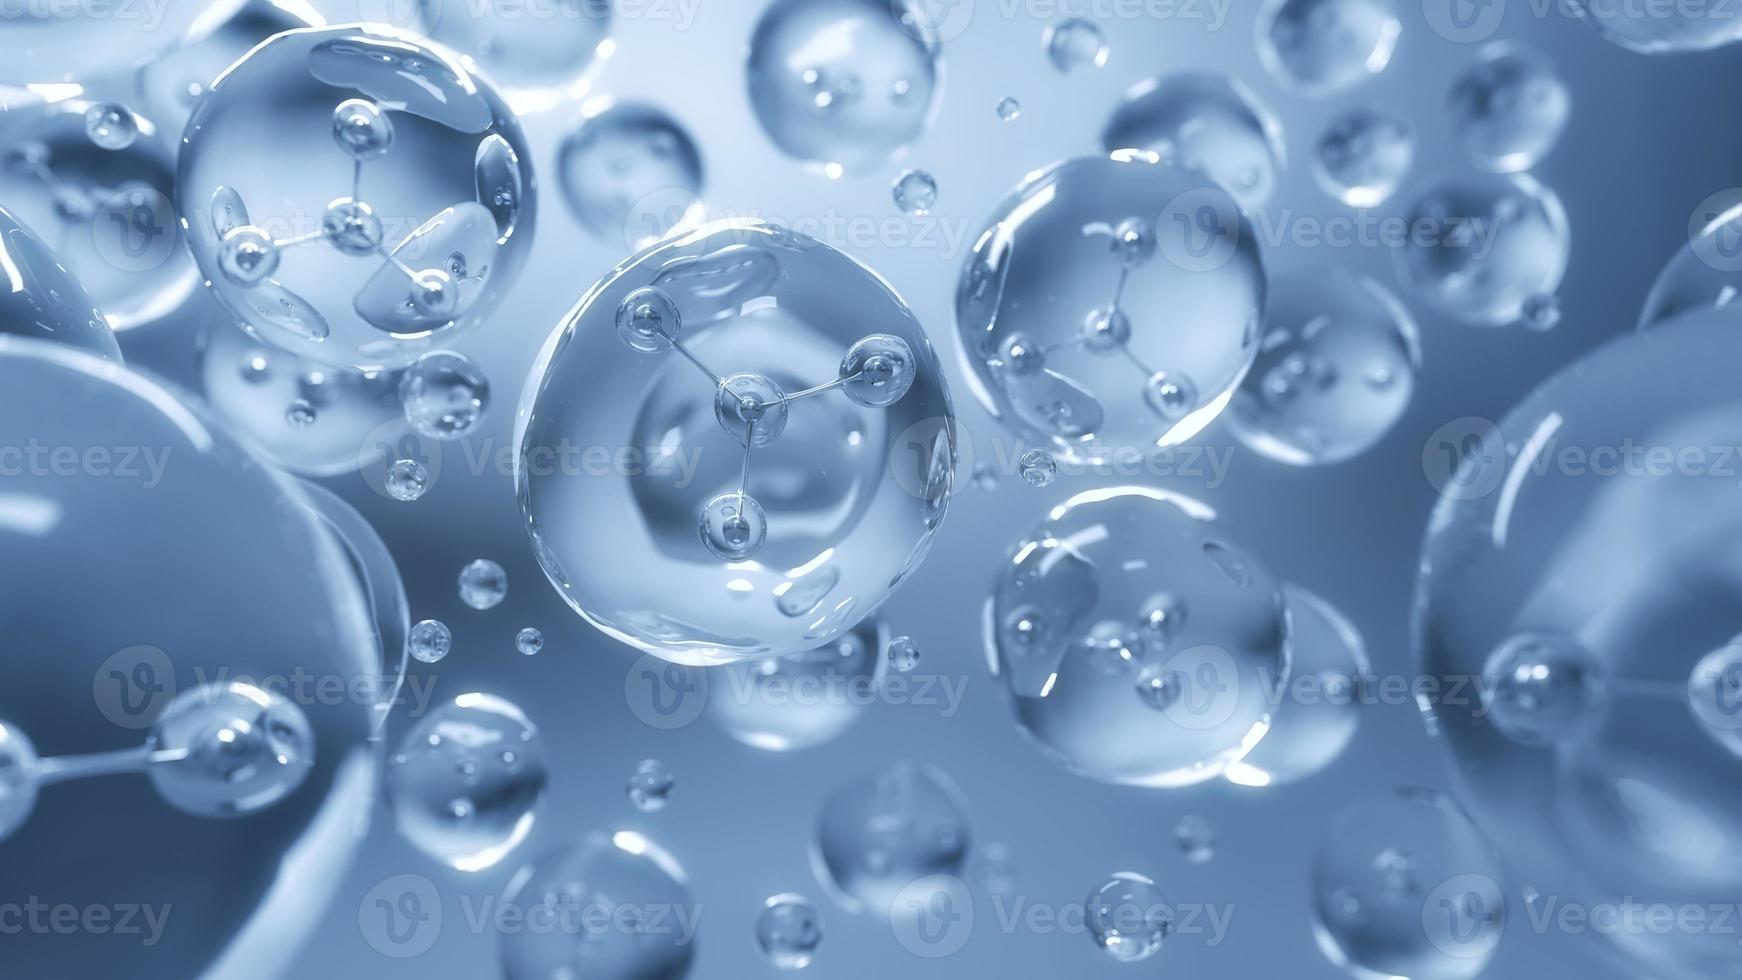 molekyl inuti flytande bubbla, abstrakt vetenskap bakgrund, 3D-rendering. foto